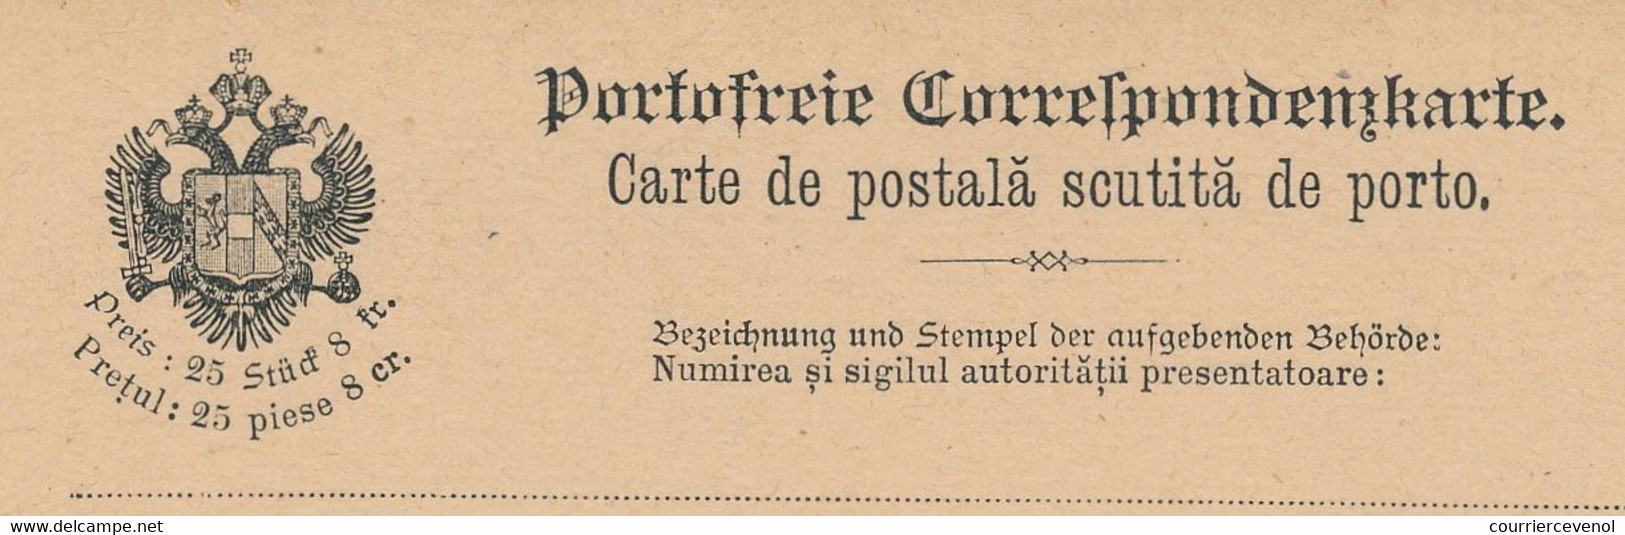 BOSNIE HERZEGOVINE - Carte Postale En Franchise De Port (Franchise Militaire) Avec Volet Réponse, Neuve - Bosnien-Herzegowina